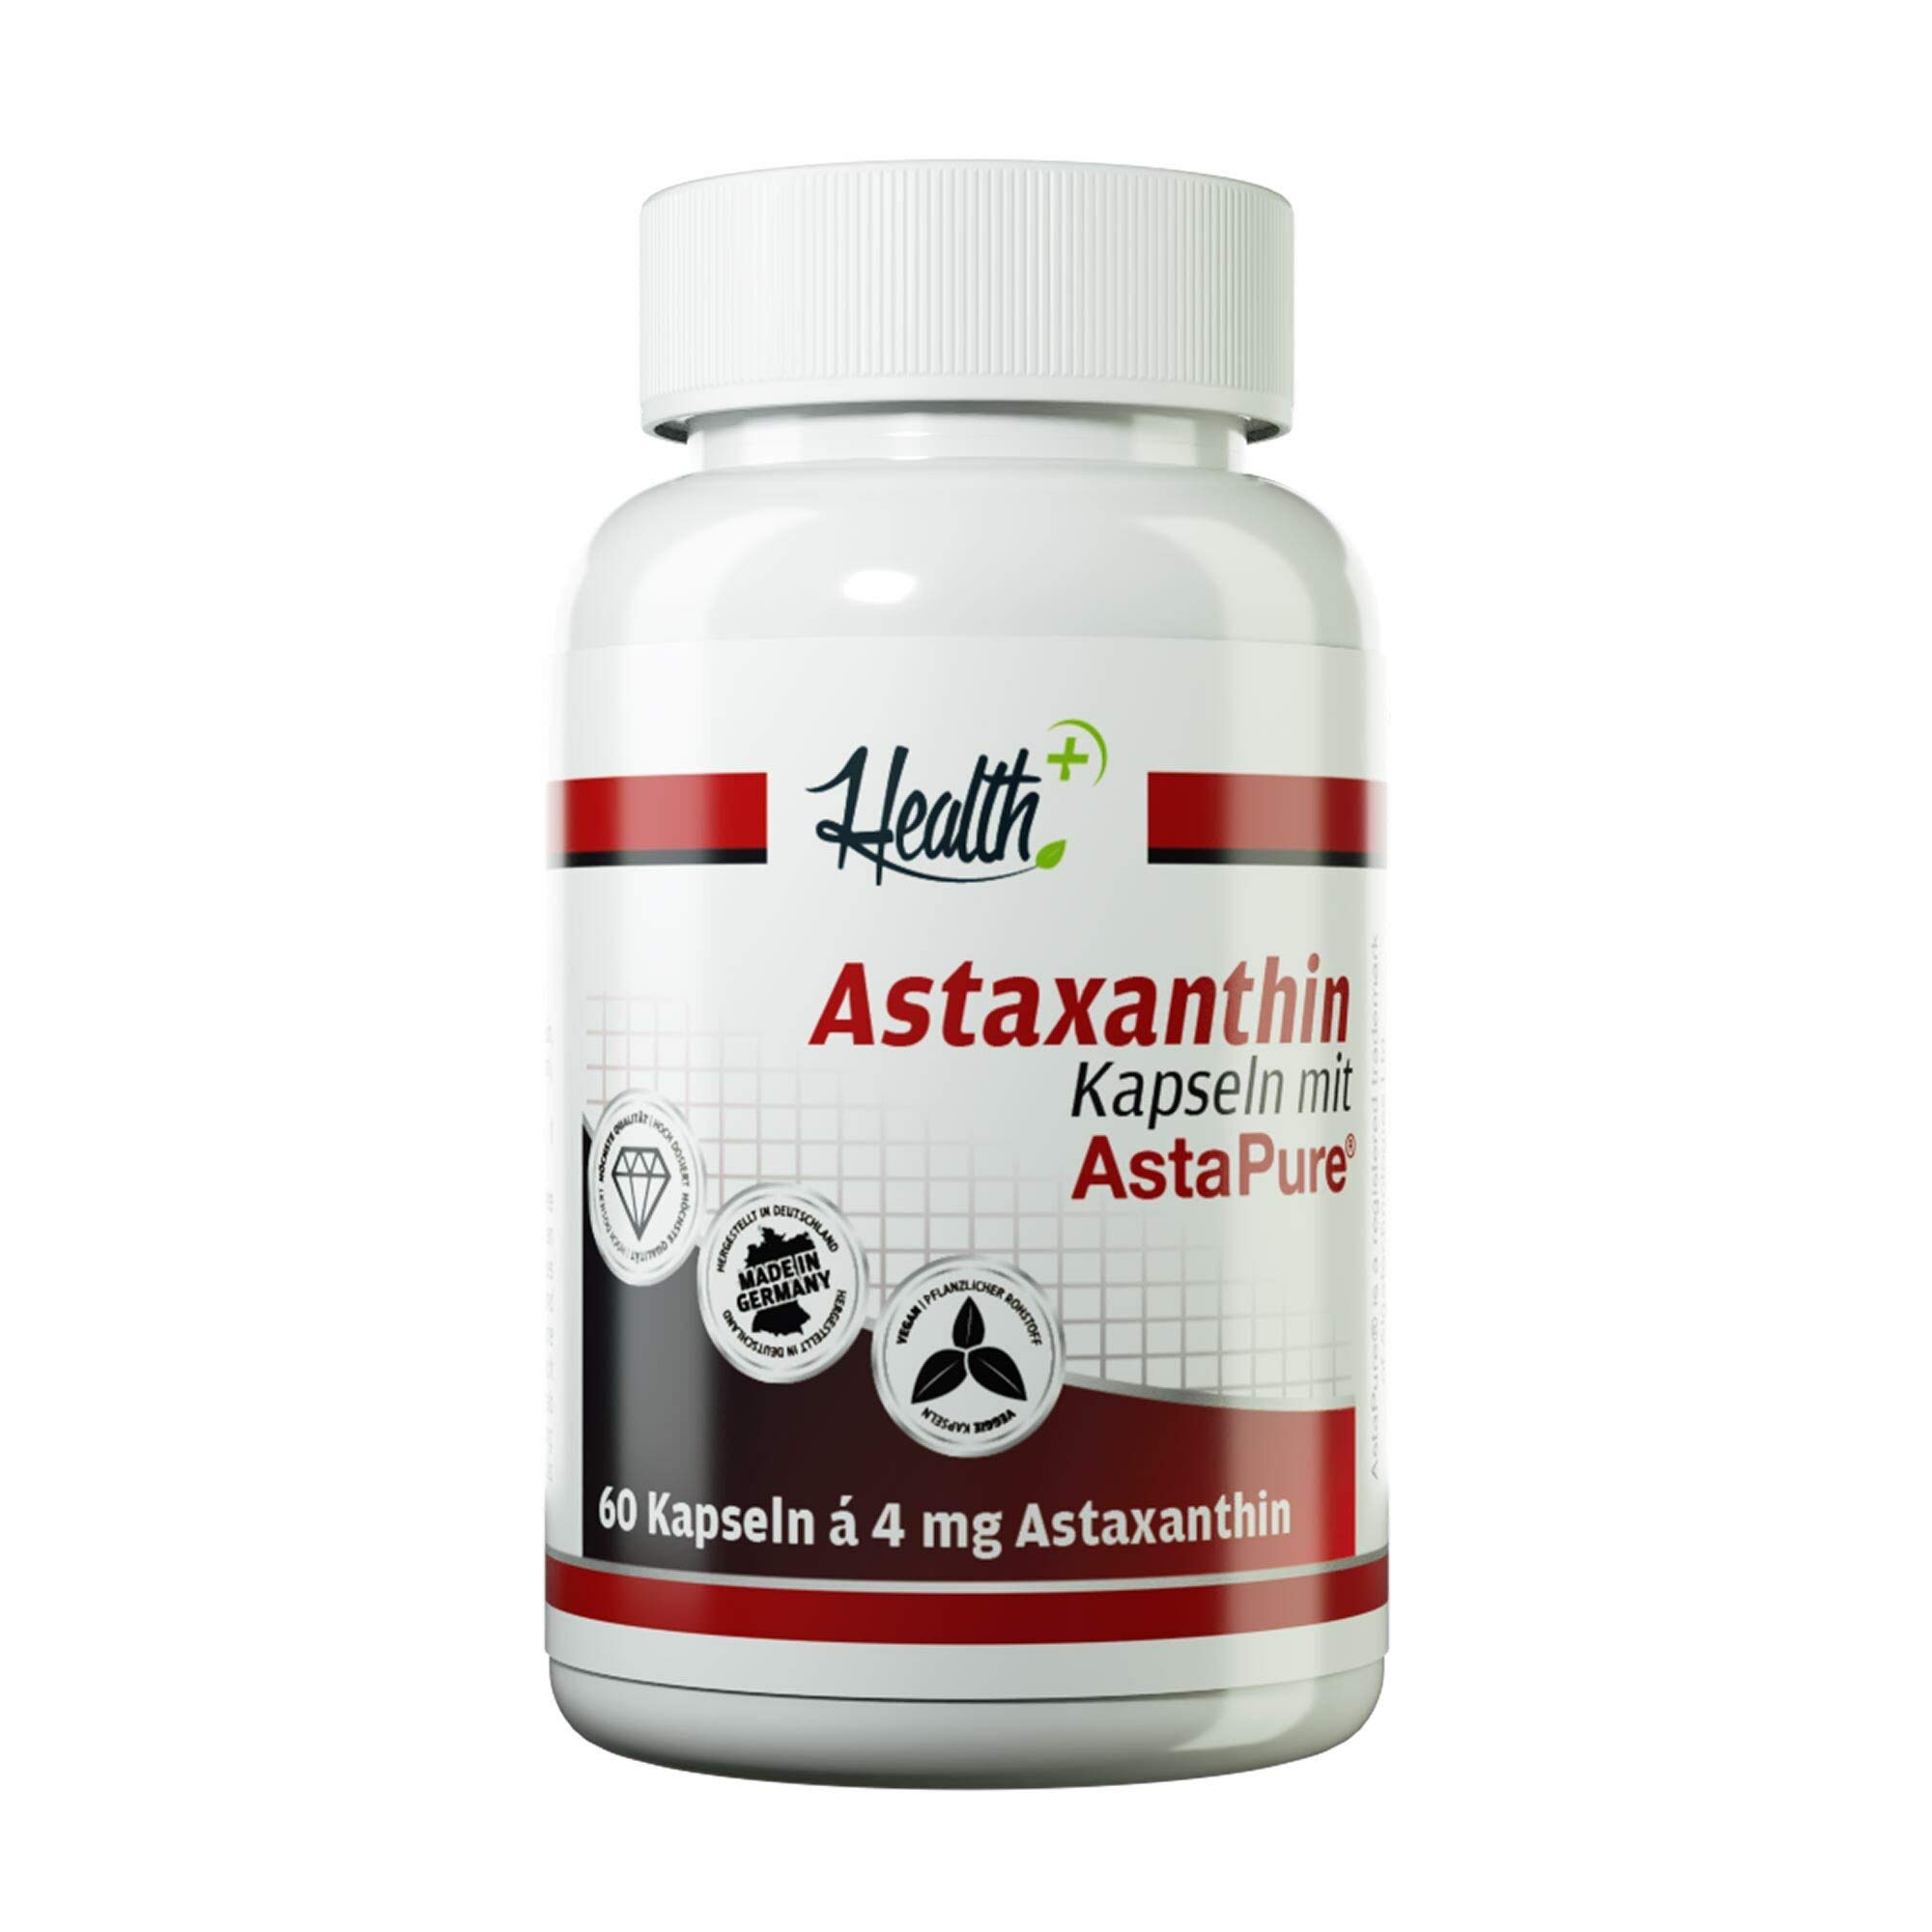 Health+ Astaxanthin - 60 Kapseln mit 4 mg des Markenrohstoffs AstaPure, veganes Antioxidans aus der Alge, Made in Germany